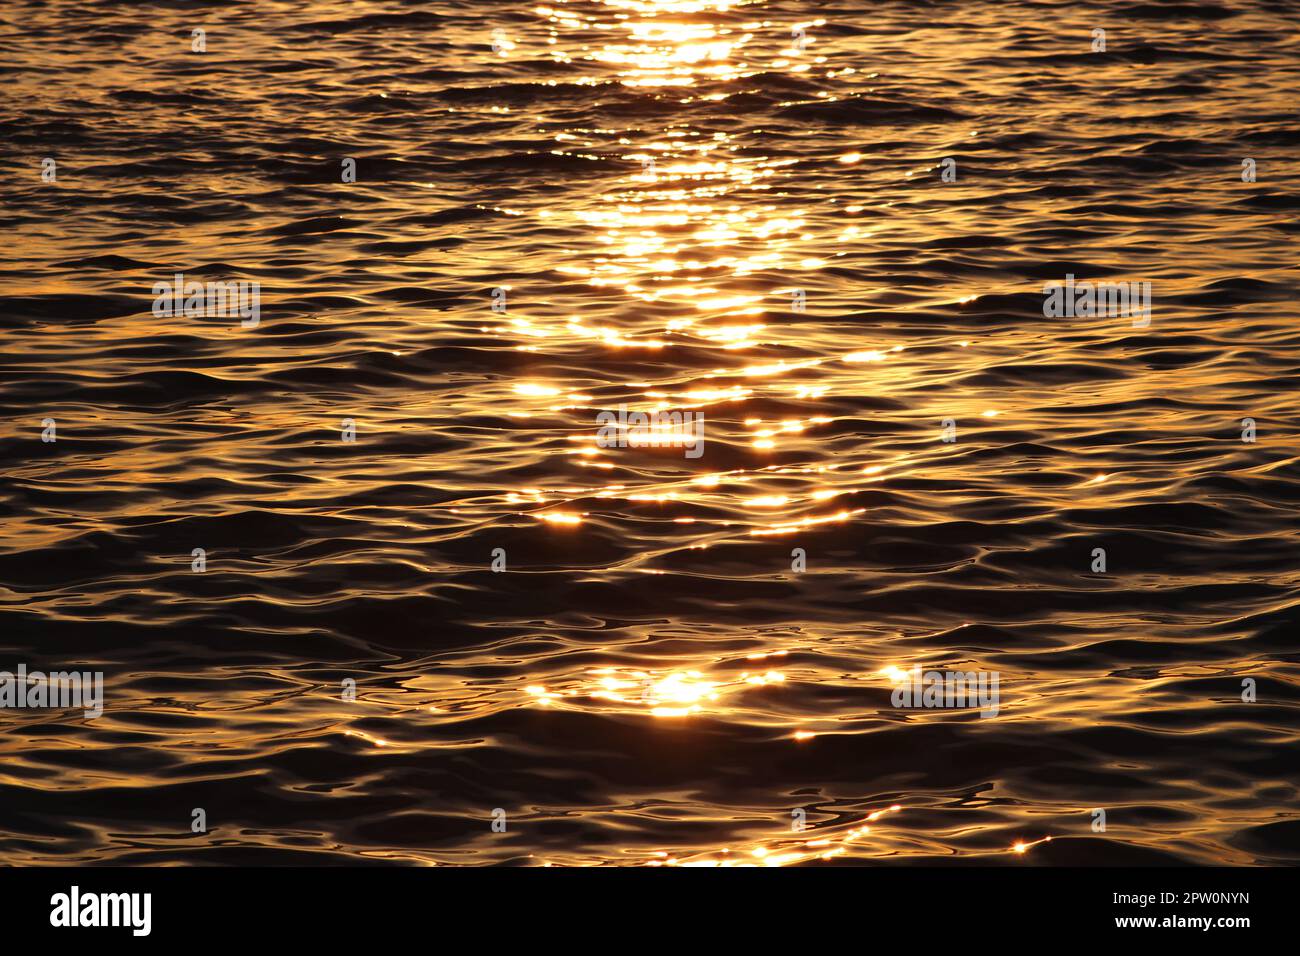 Coucher de soleil doré sur la mer orange vif coloré, ligne jaune des derniers rayons du soleil, reflet du soleil sur l'eau sombre calme avec peu d'ondulation de brise, texture de l'eau. Banque D'Images